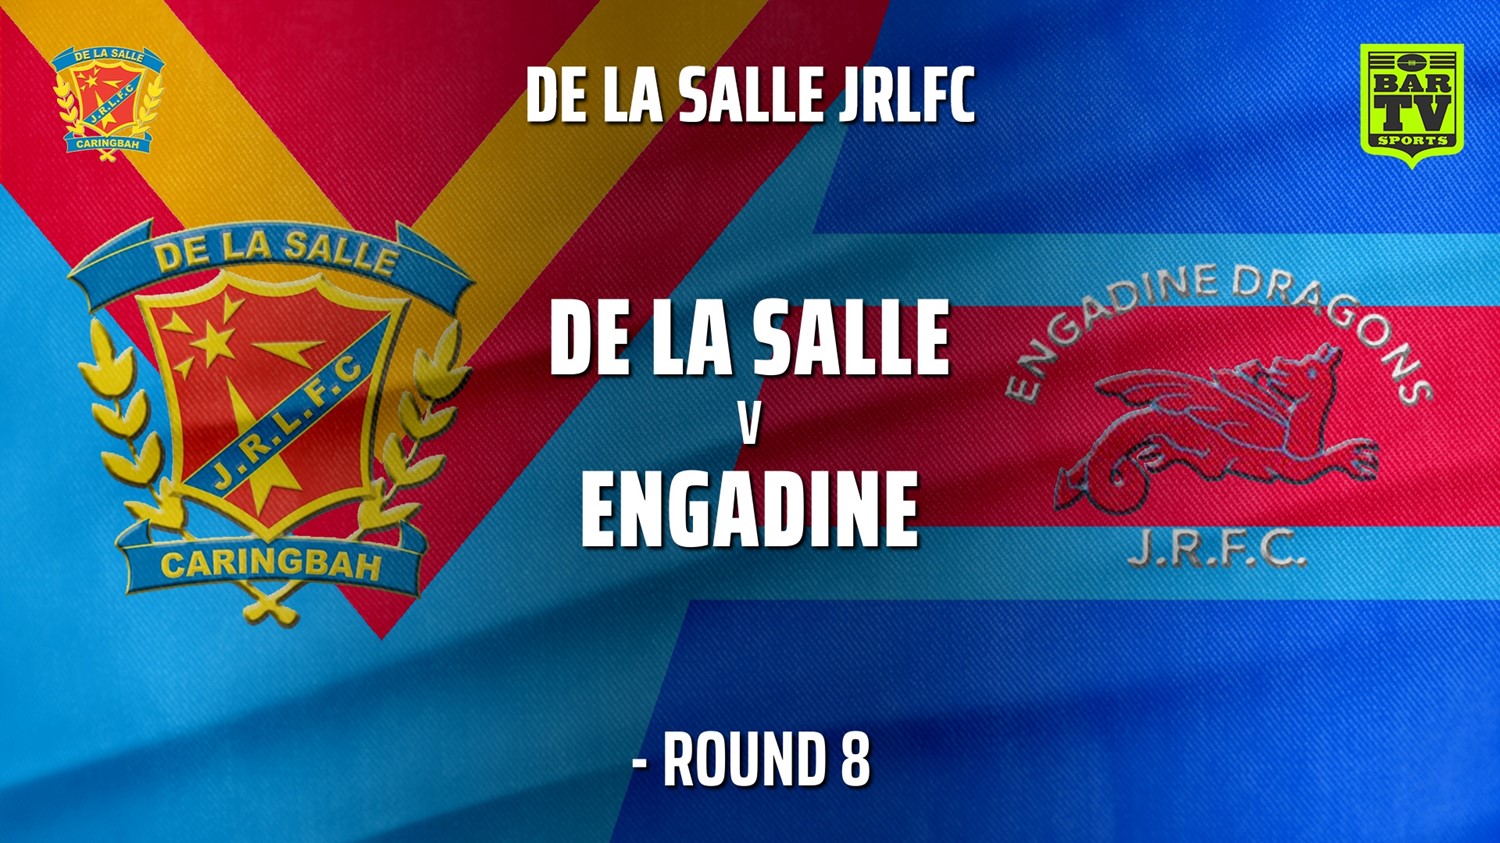 210626-De La Salle - Under 11 Gold Round 8 - De La Salle v Engadine Dragons Slate Image